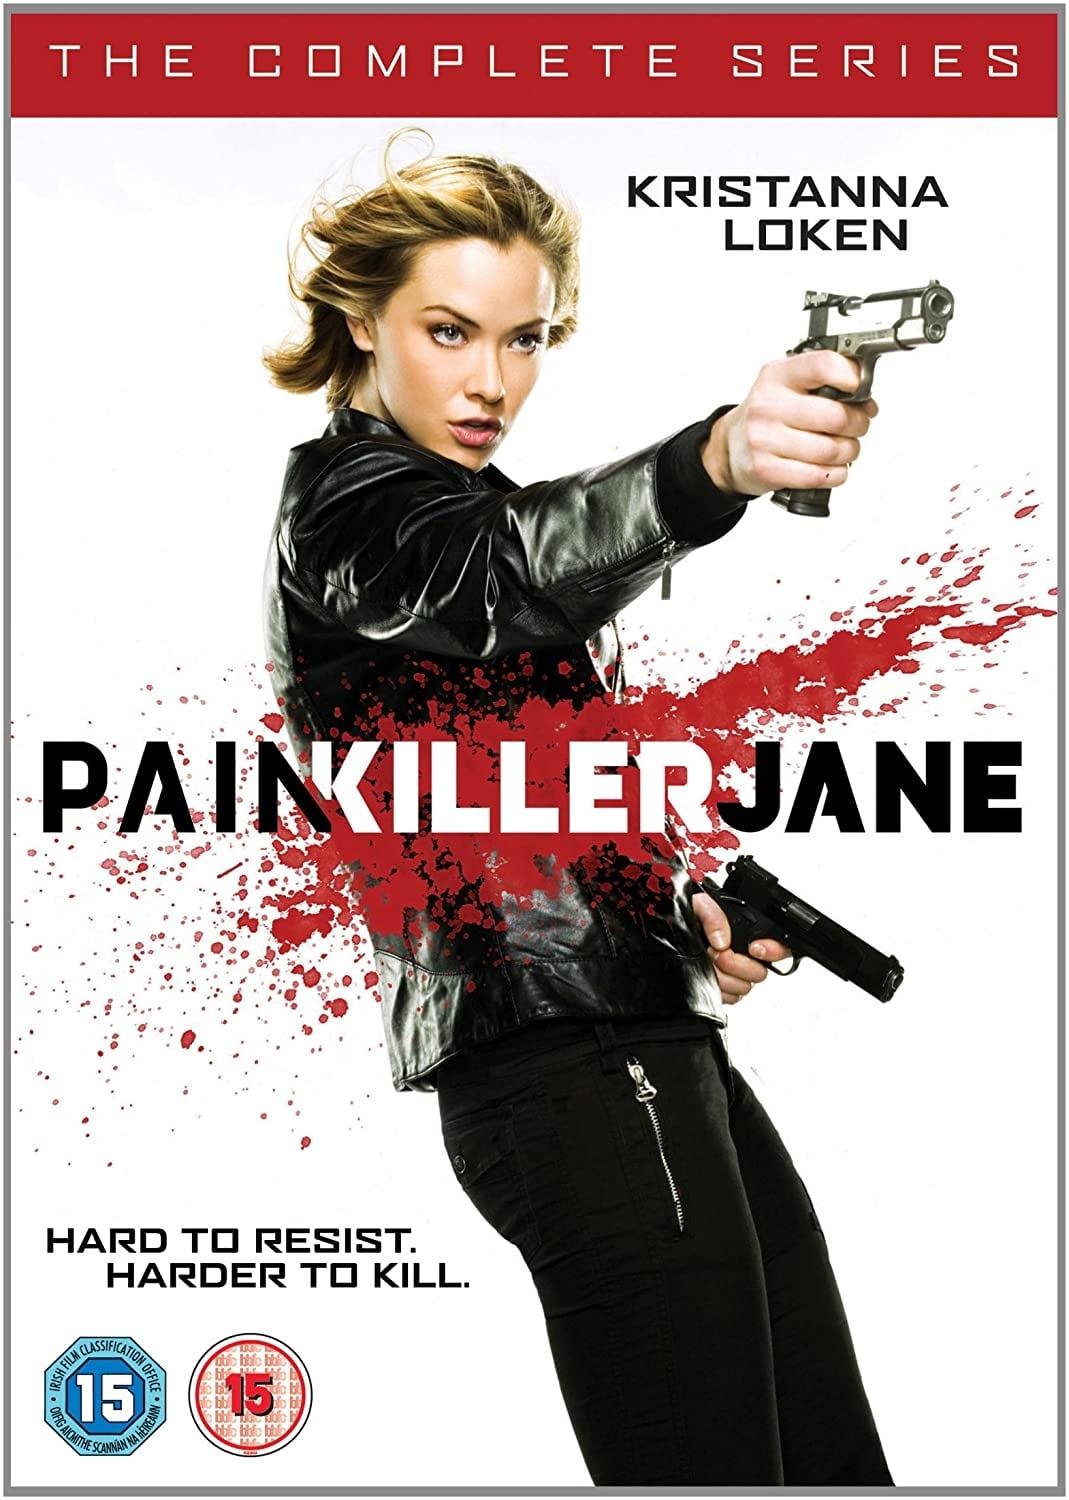 Painkiller Jane poster